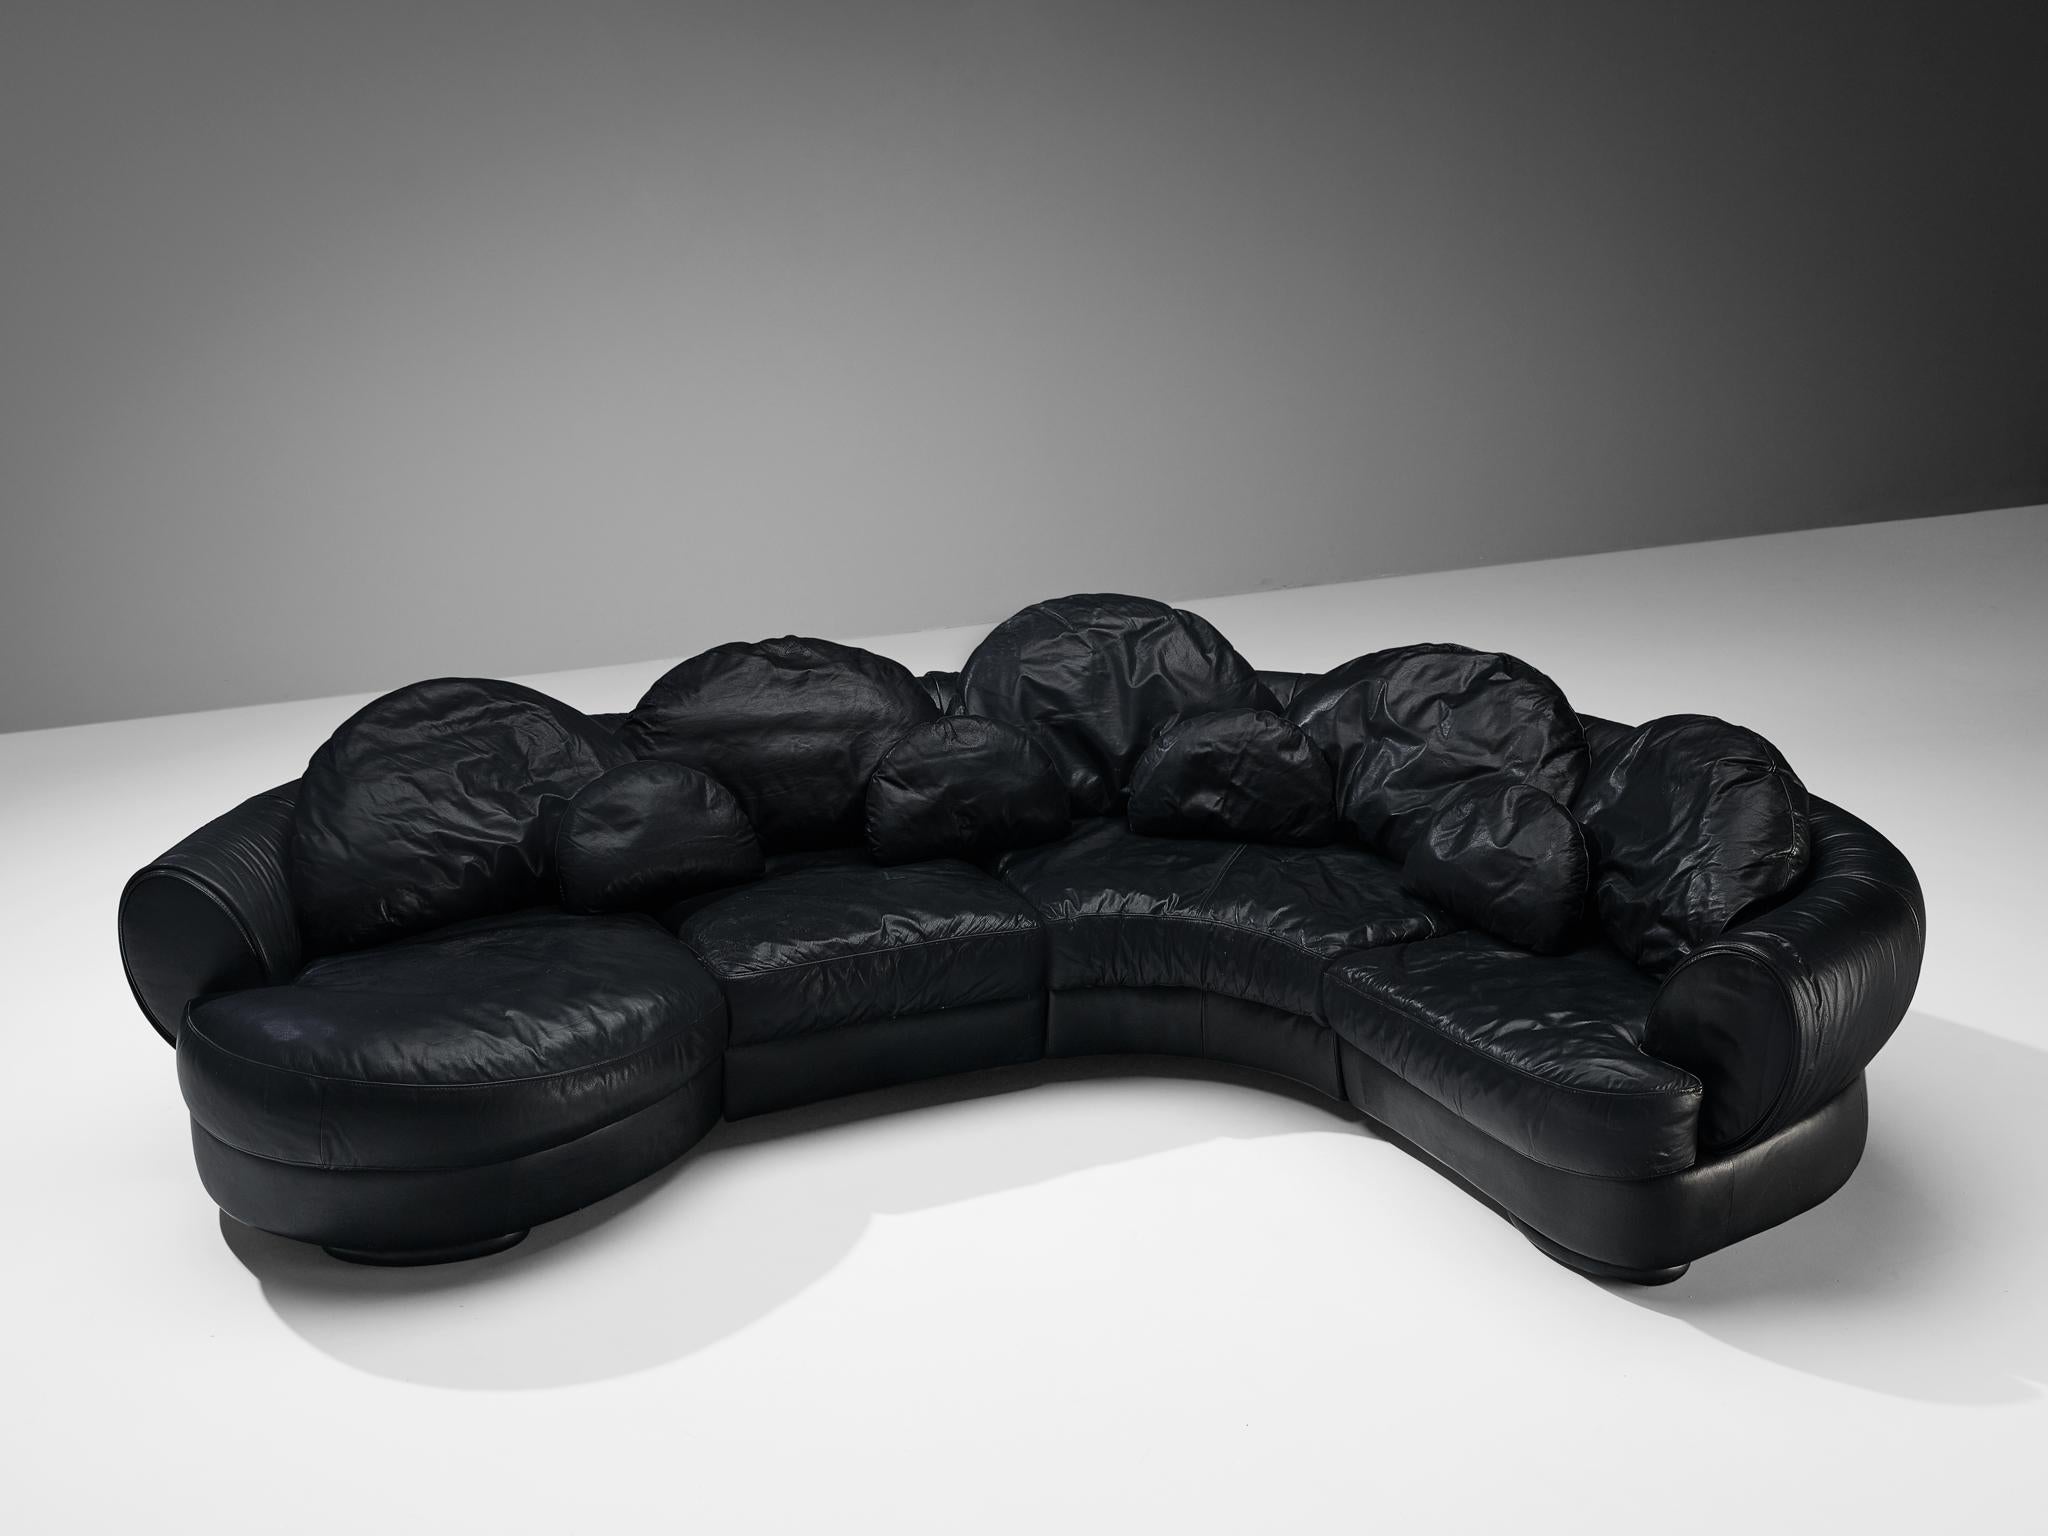 Zuschreibung Wiener Werkstätte, modulares Sofa, Leder, Österreich, 1980er Jahre

Dieses Sofa ist vollständig in schwarzem Leder ausgeführt, das zu einem einheitlichen Look beiträgt. Die Konstruktion besteht aus vier Elementen. Das Sofa hat einen